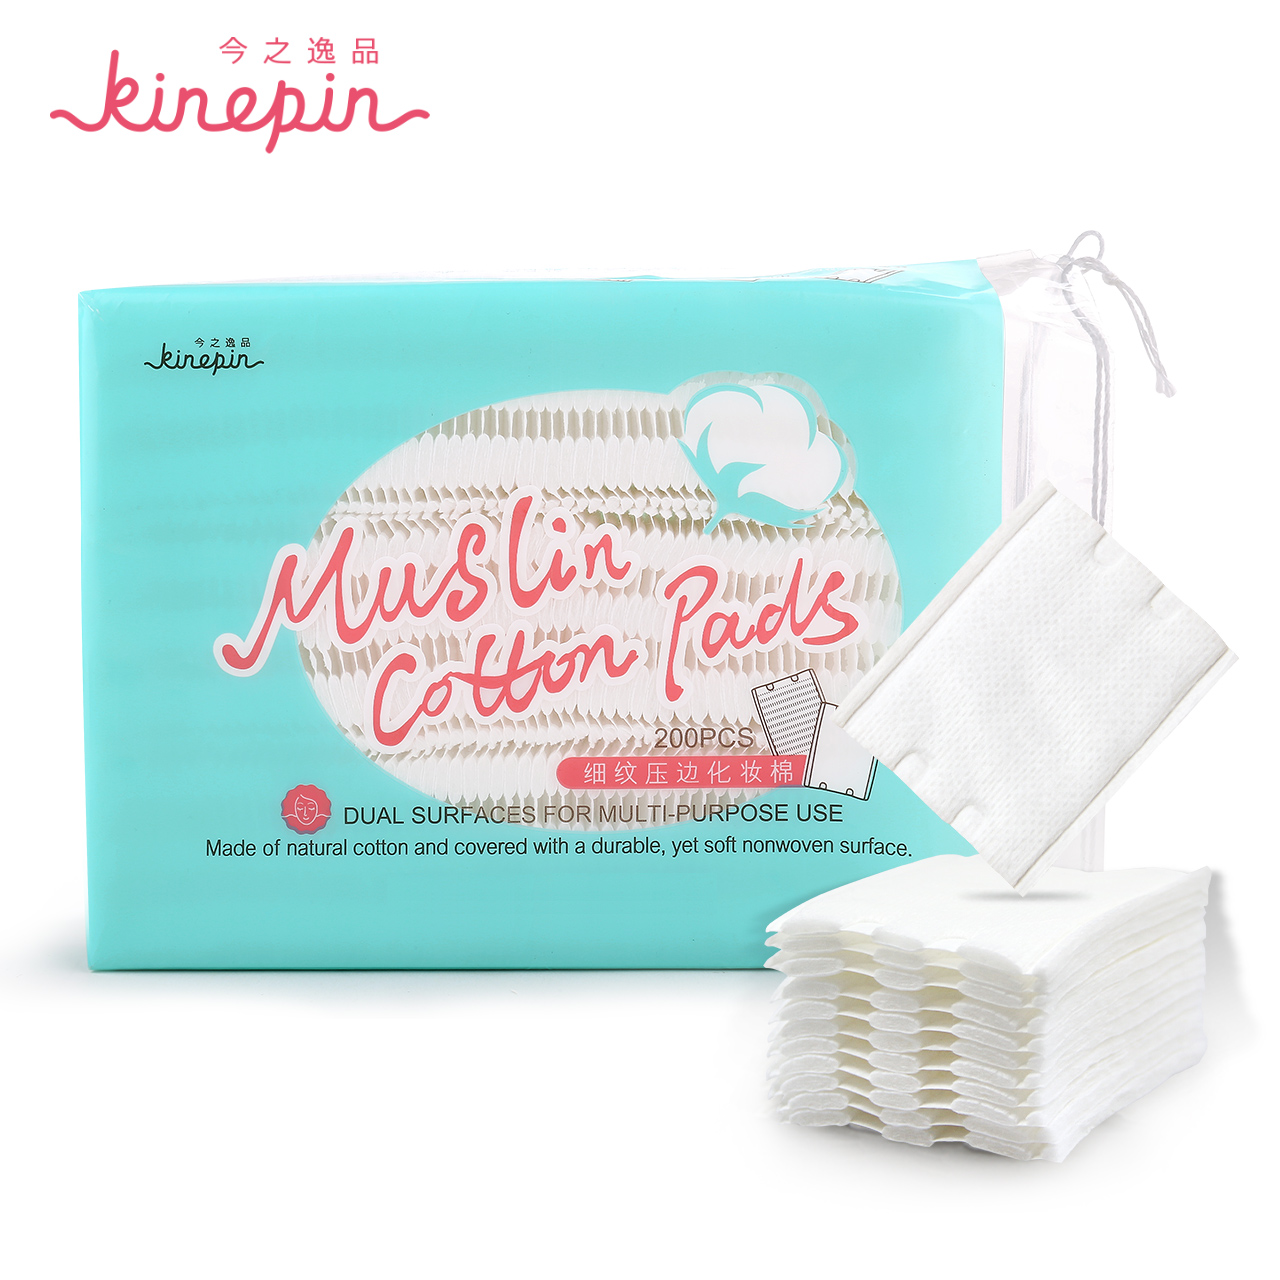 KINEPIN/今之逸品细纹压边双面双效 化妆棉 卸妆棉 美容工具厚薄产品展示图2